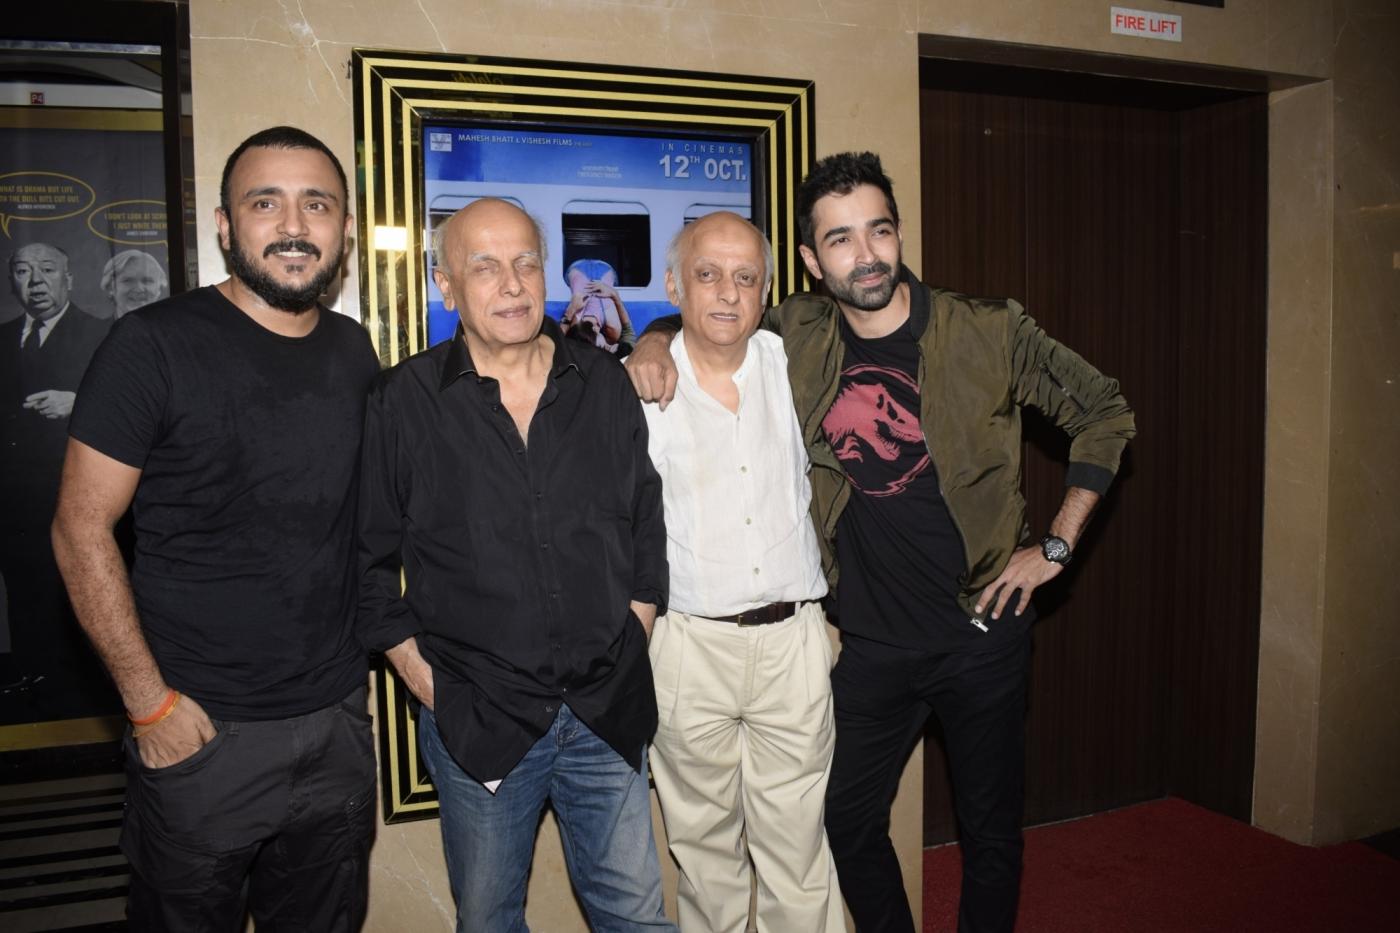 Mumbai: Producers Mahesh Bhatt, Mukesh Bhatt and actor Varun Mitra at the special screening of film "Jalebi" in Mumbai on Oct 11, 2018. (Photo: IANS) by .